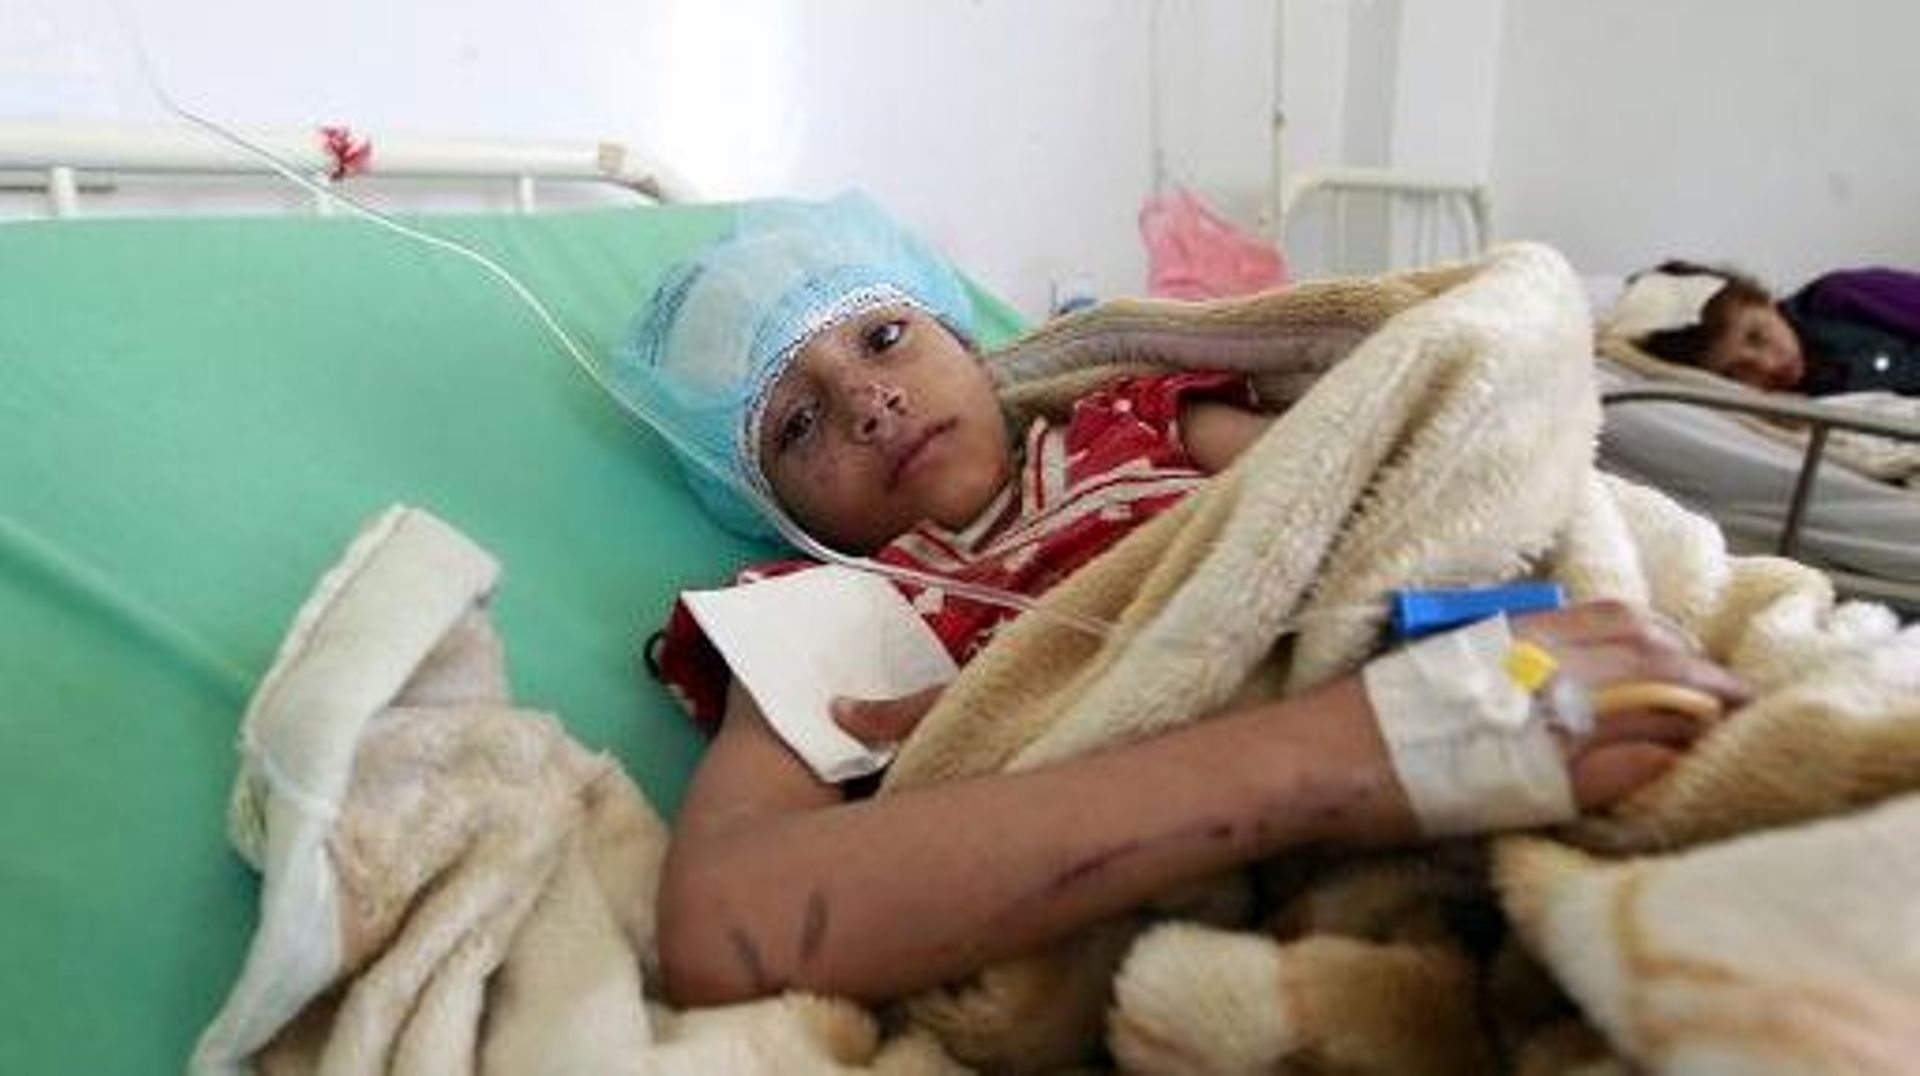 Un enfant blessé dans un hôpital de Sanaa au Yémen, le 12 mai 2015 